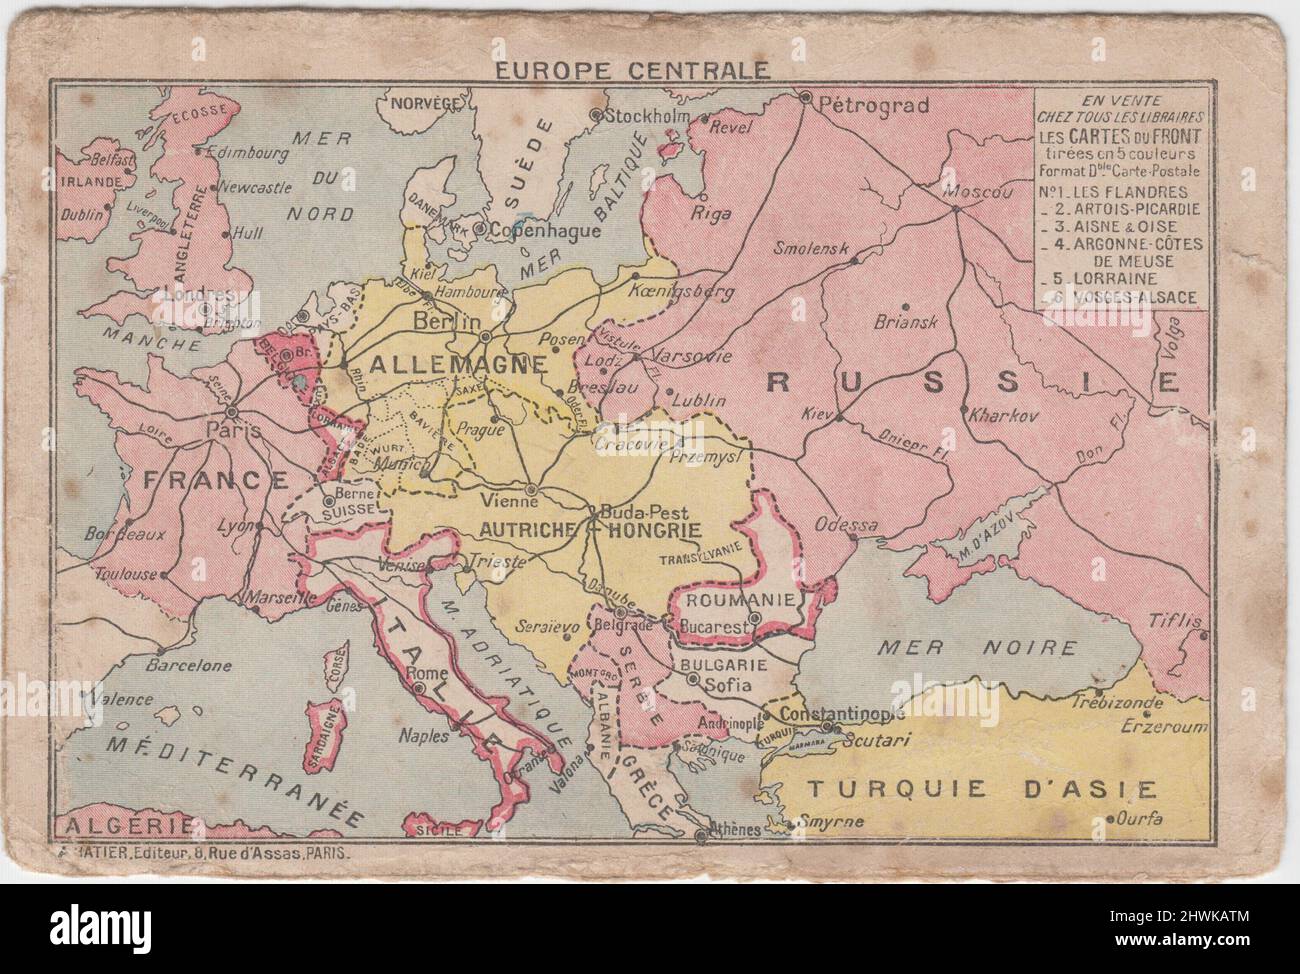 Europe Centrale / Mitteleuropa: Karte des Ersten Weltkriegs mit den Grenzen der kämpfenden Länder. Die Karte war auf der Vorderseite einer französischen Armee-Briefkarte enthalten Stockfoto